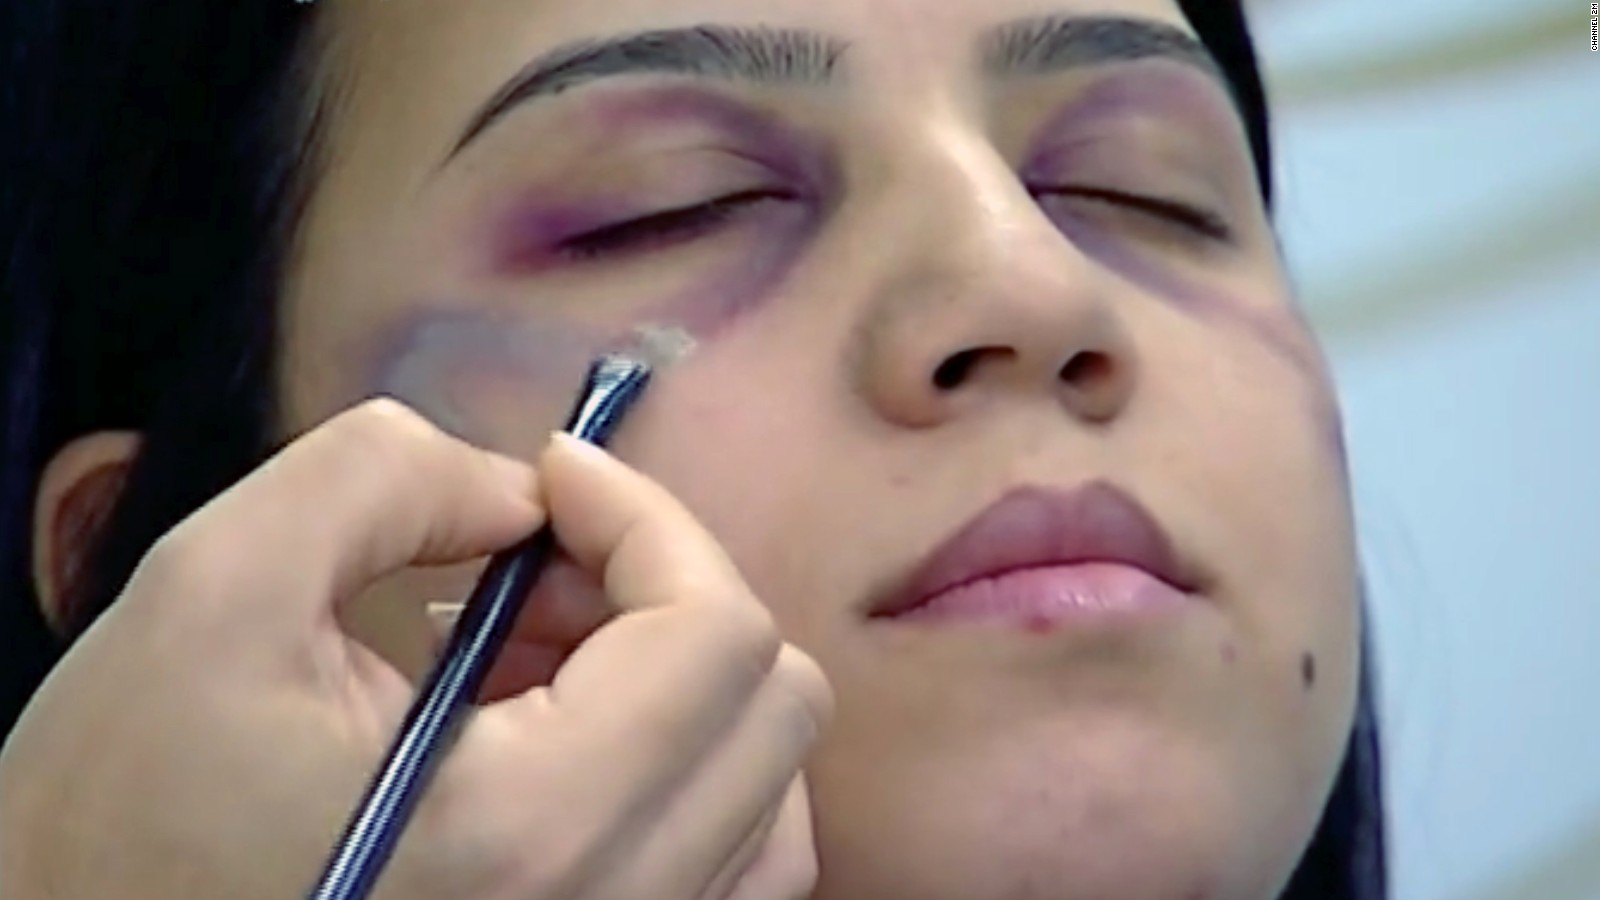 Enseñan a mujeres cómo maquillar marcas de violencia doméstica | Video | CNN